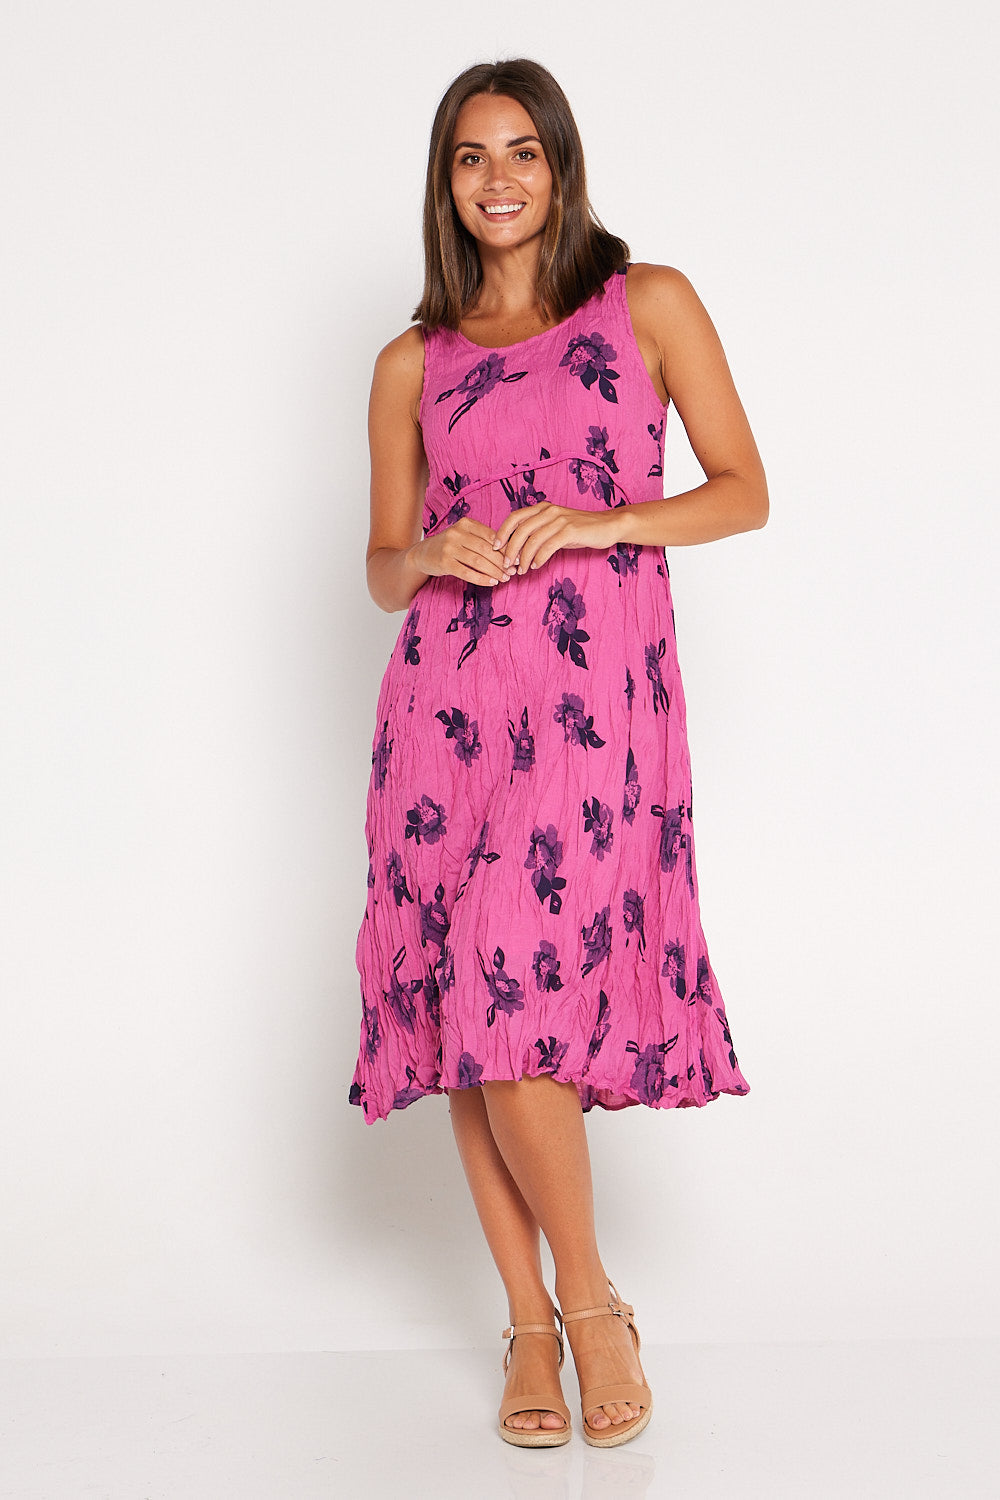 Adeline Dress - Pink Floral